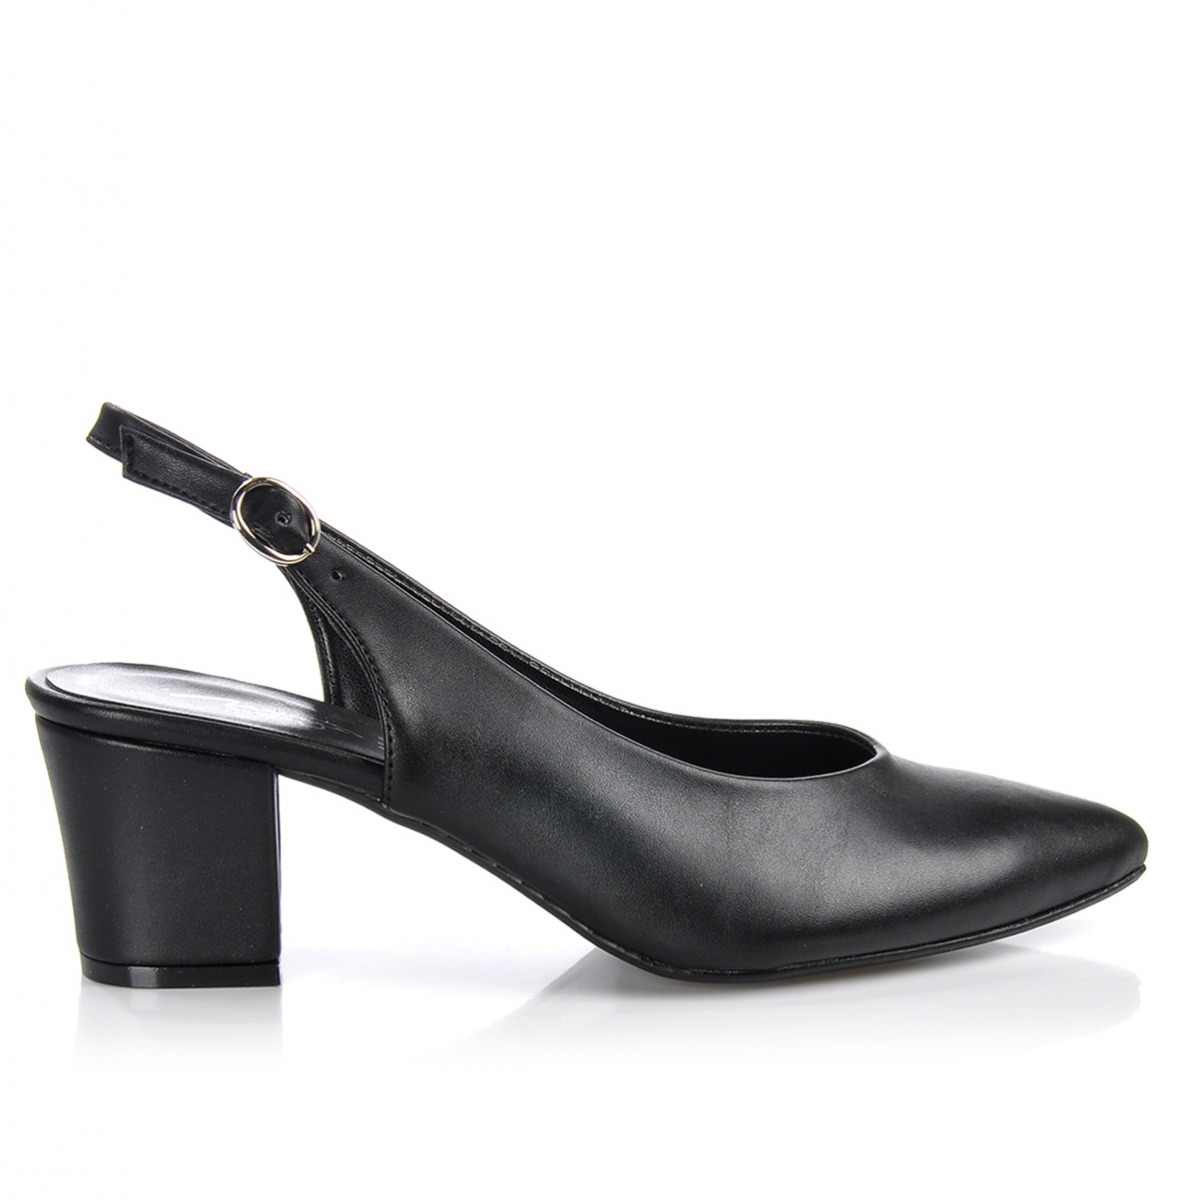 Flo Kadın  Siyah Klasik Topuklu Ayakkabı VZN-233Y. 1